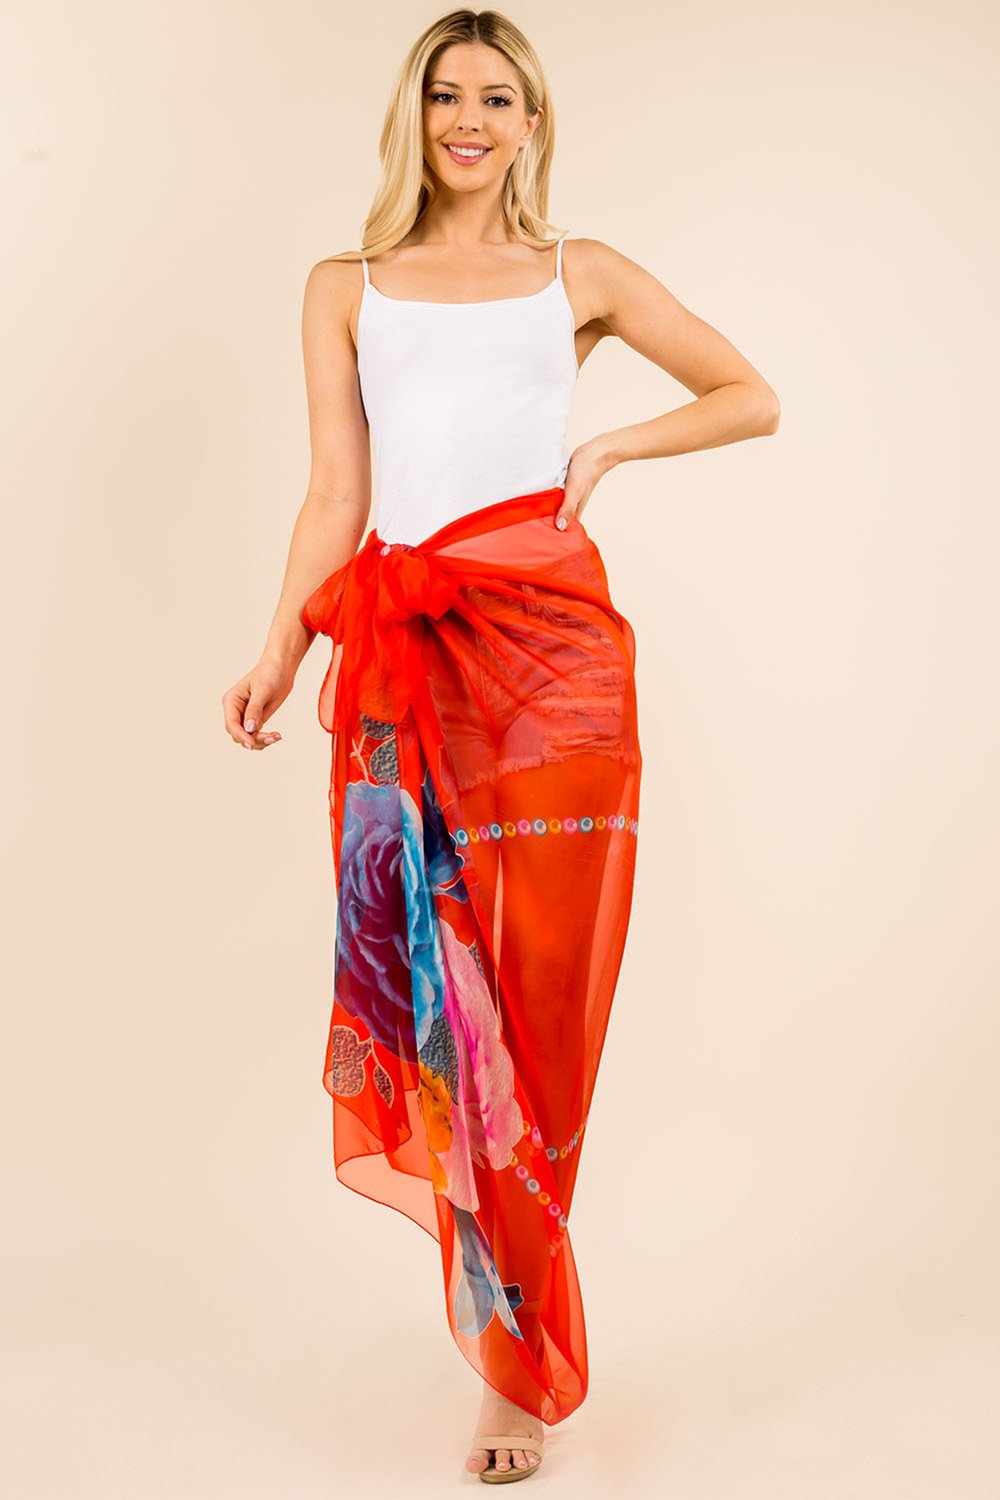 PP-3360 big floral design sarong